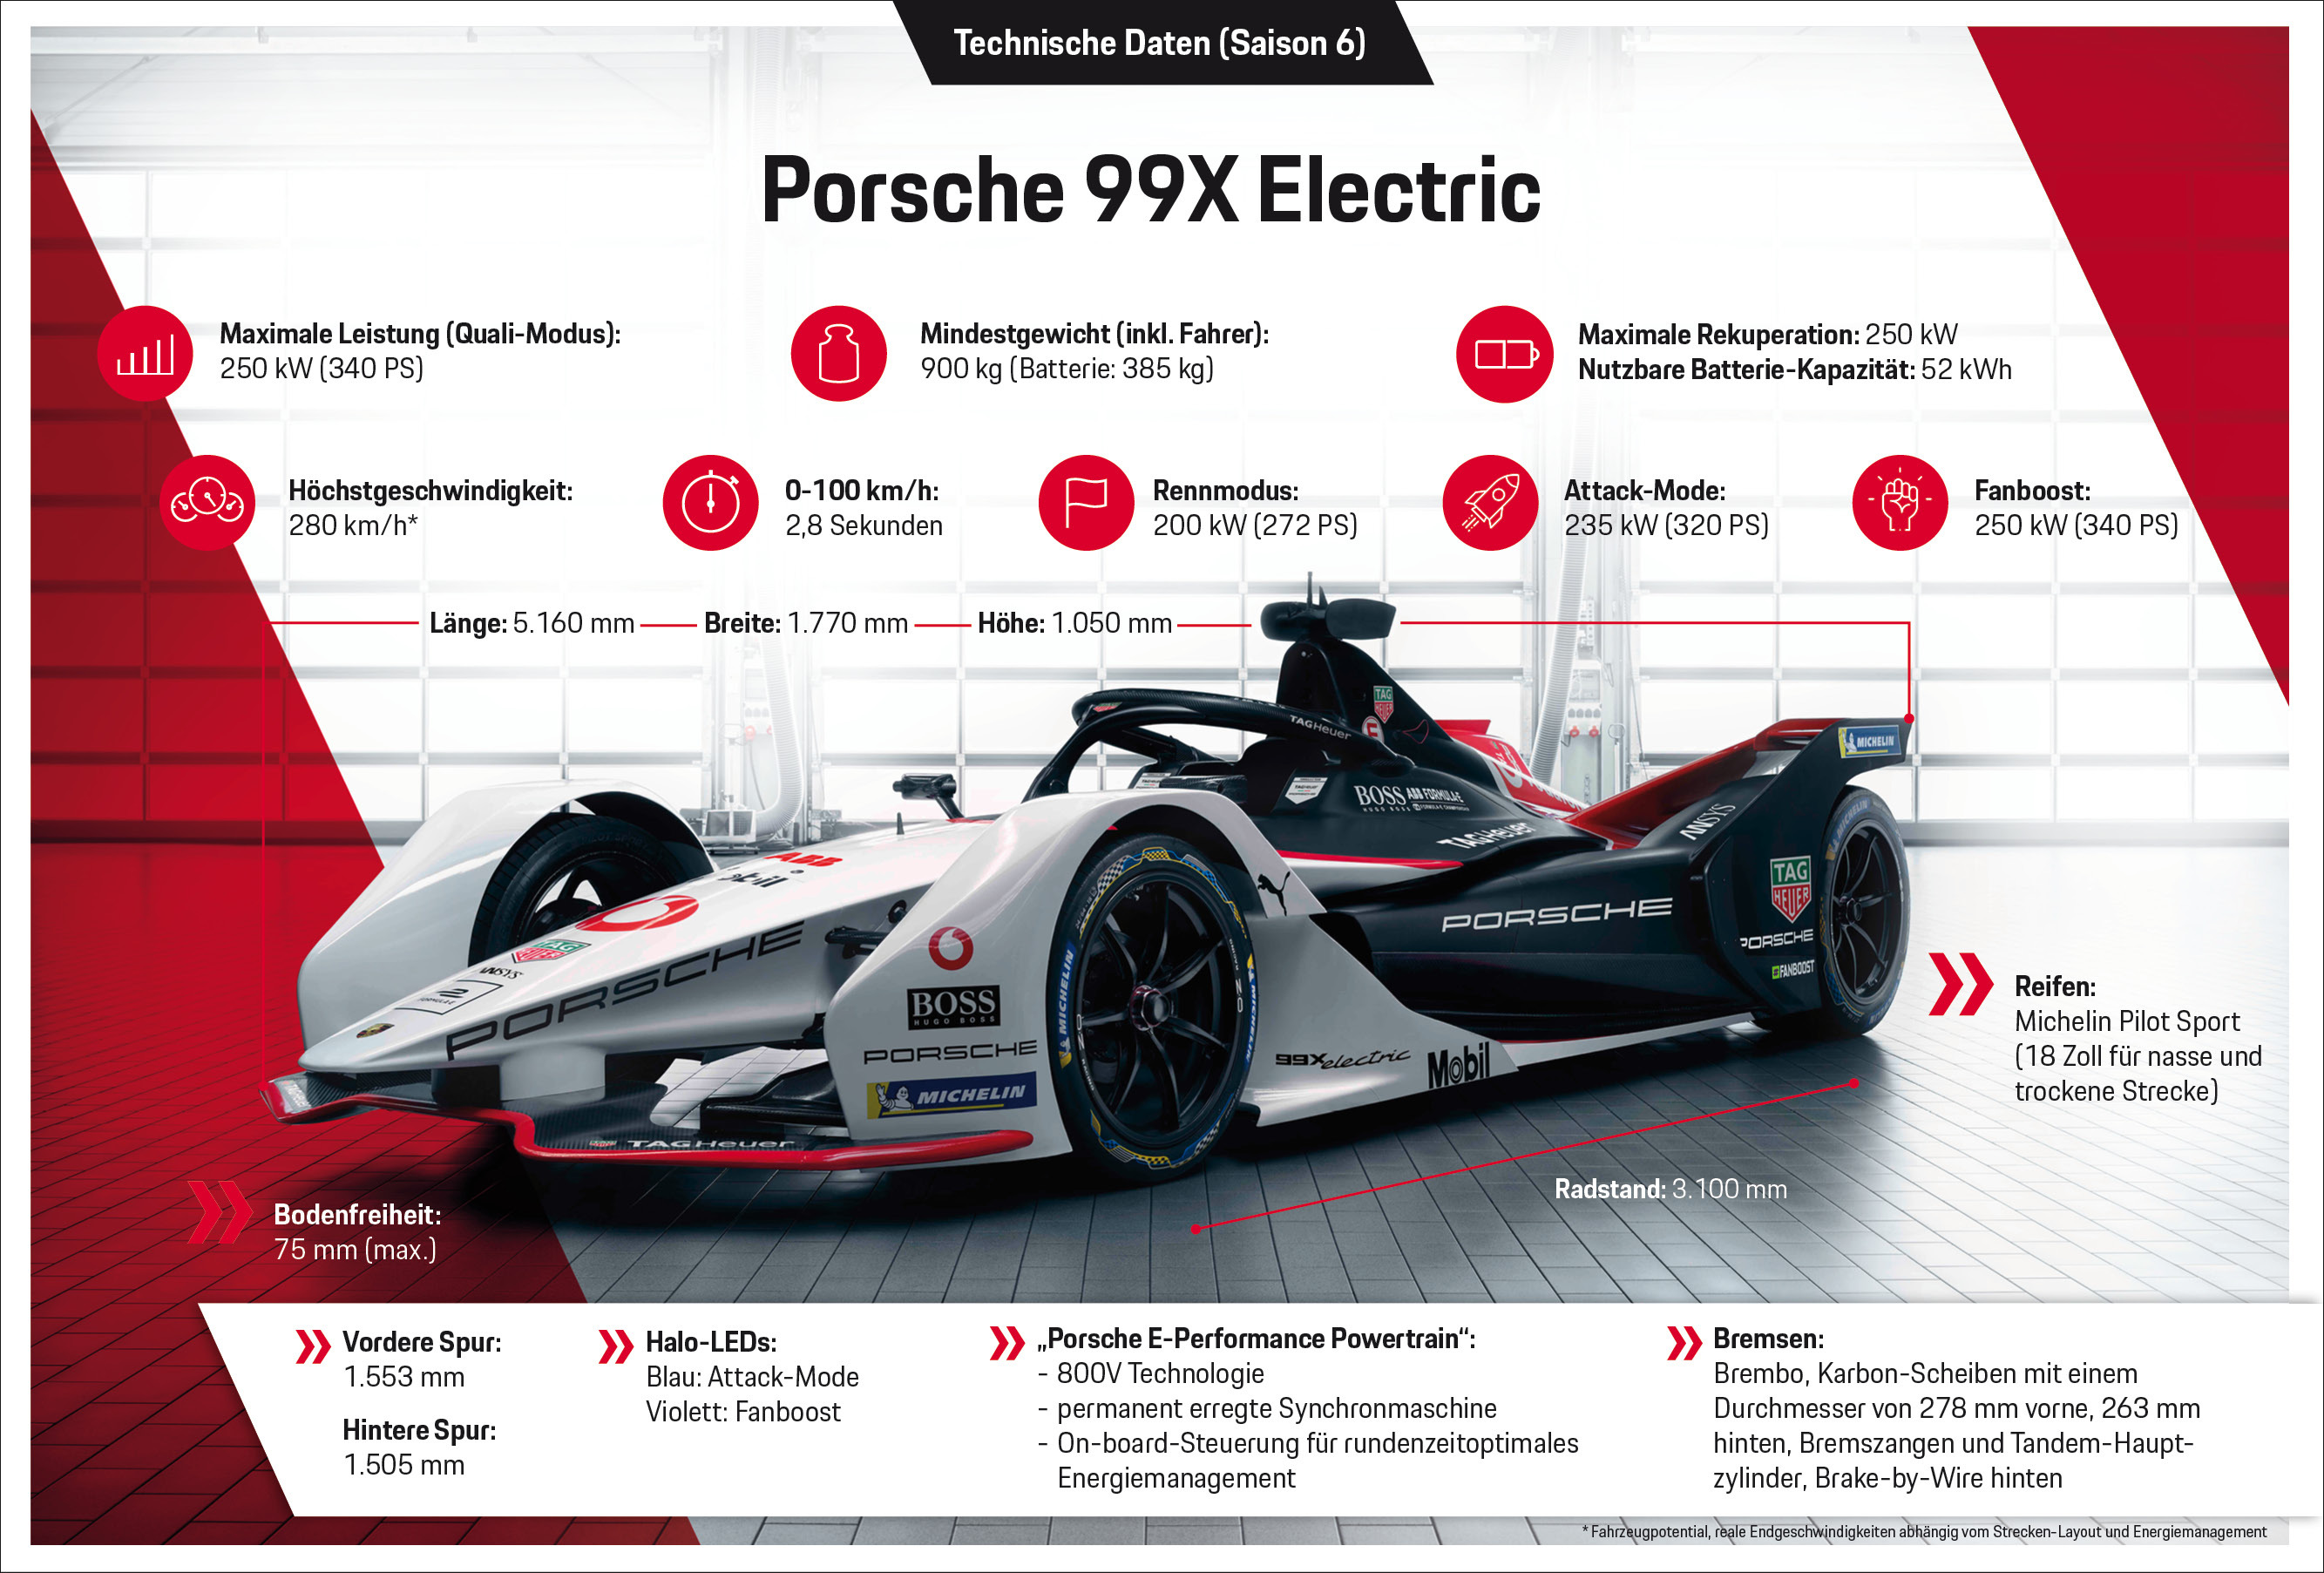 Porsche 99X Electric, Technische Daten (Saison 6), Infografik, 2020, Porsche AG